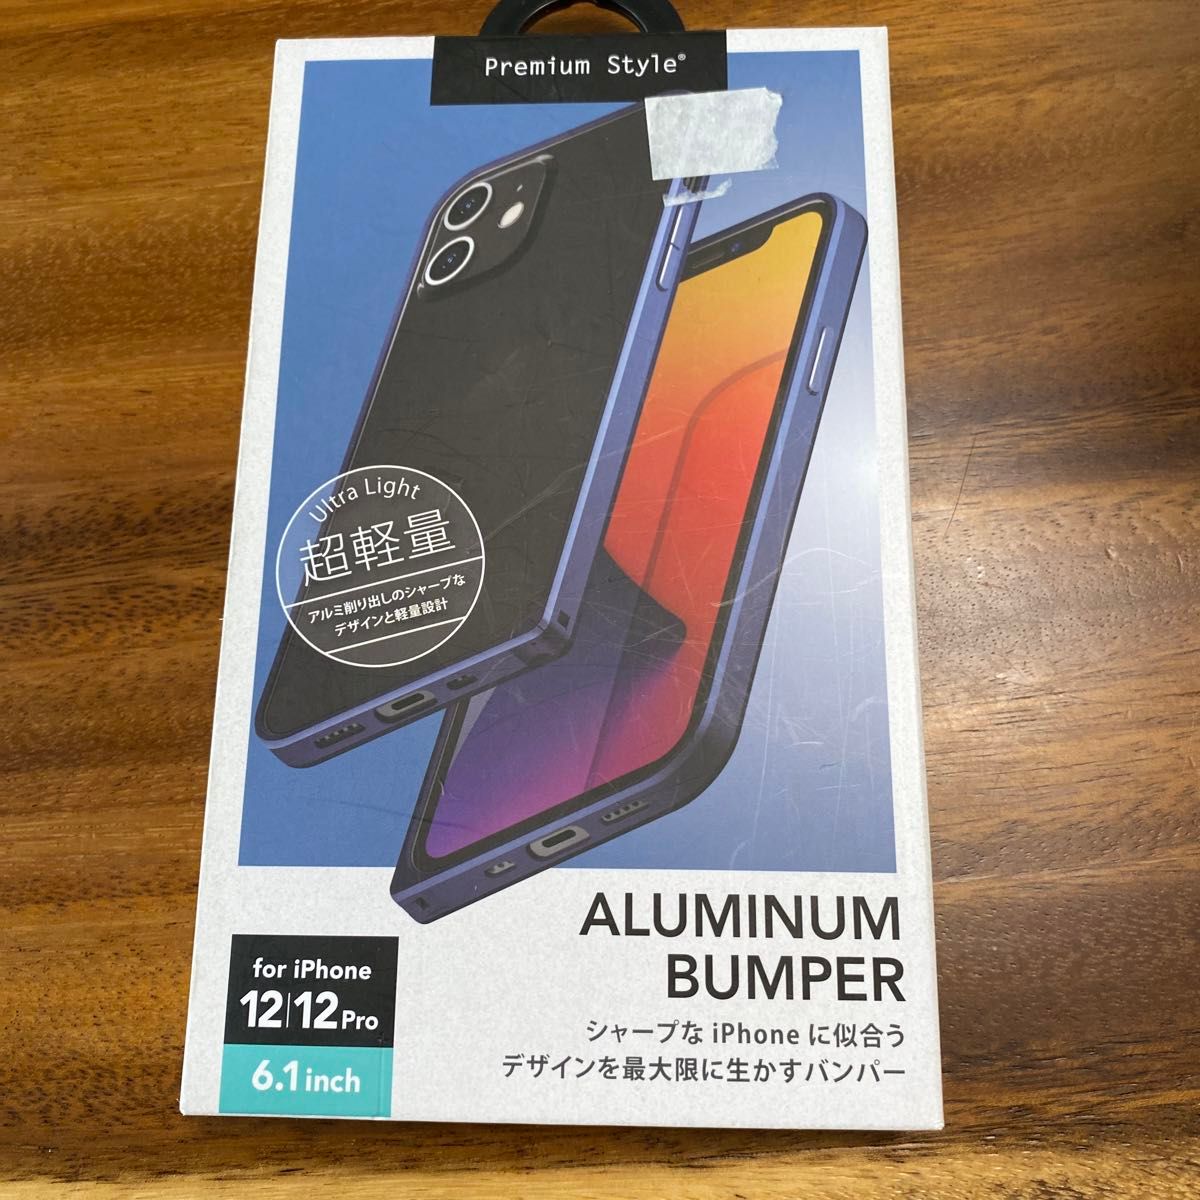 Premium Style iPhone 12/12 Pro用 アルミニウムバンパー ネイビー PG-20GBP04NV